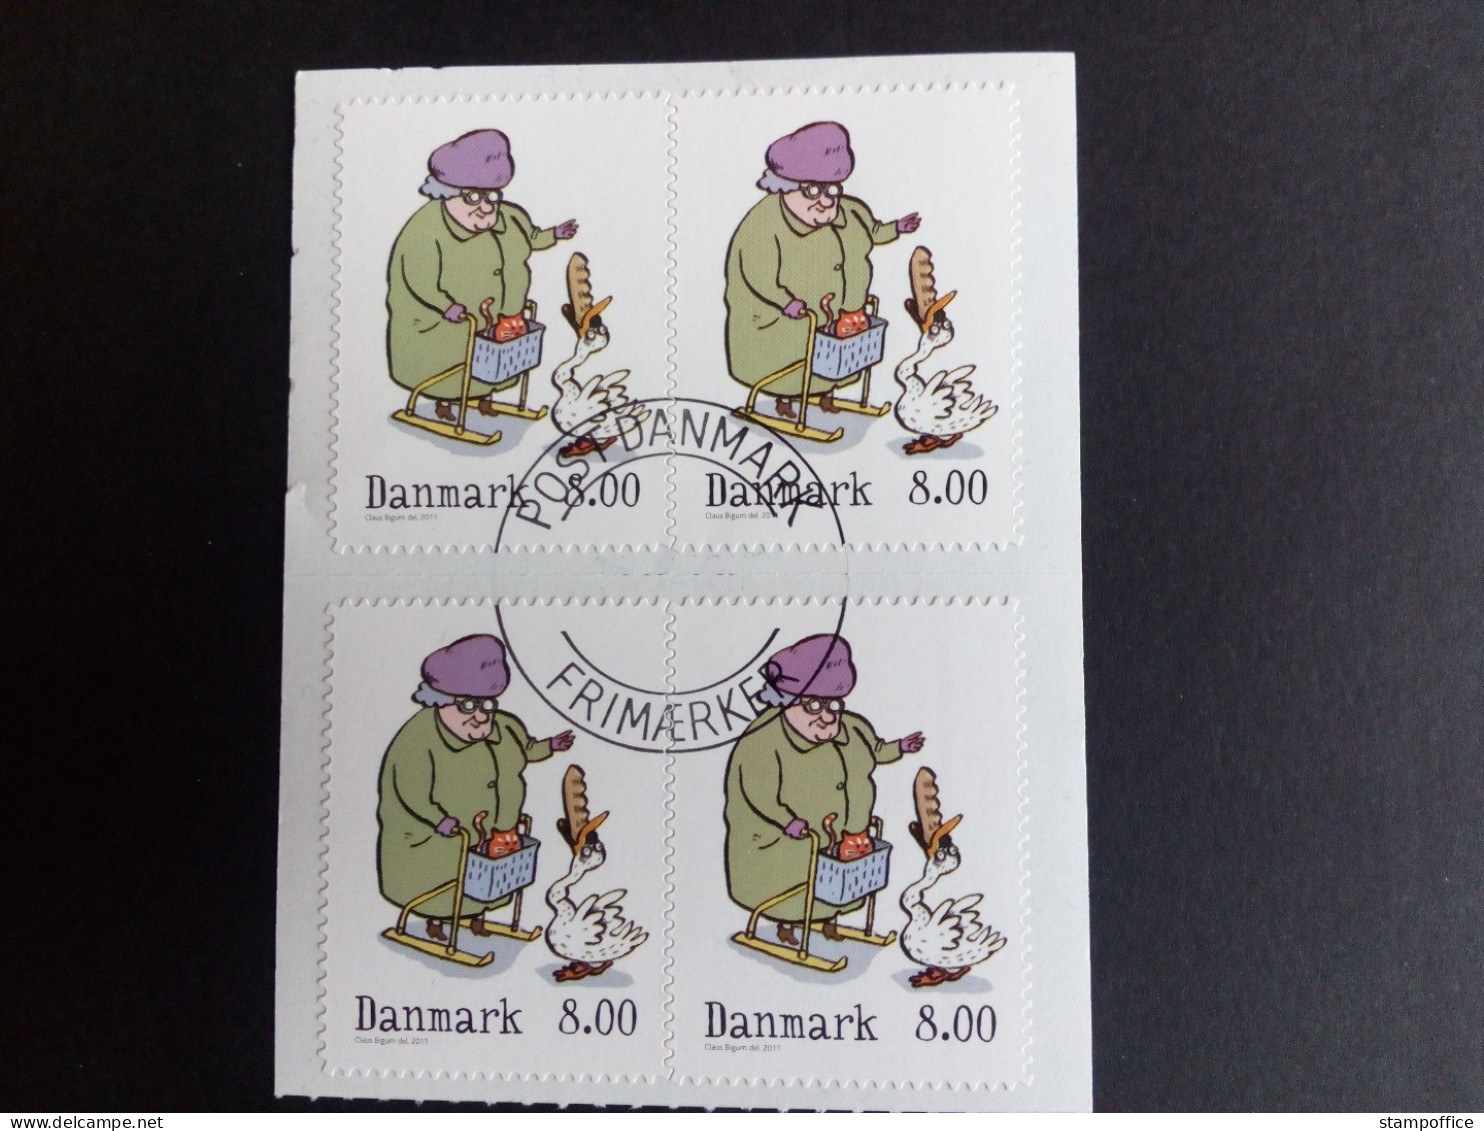 DÄNEMARK MI-NR. 1682 C GESTEMPELT(USED) 4er BLOCK WINTERMÄRCHEN 2011 - Used Stamps